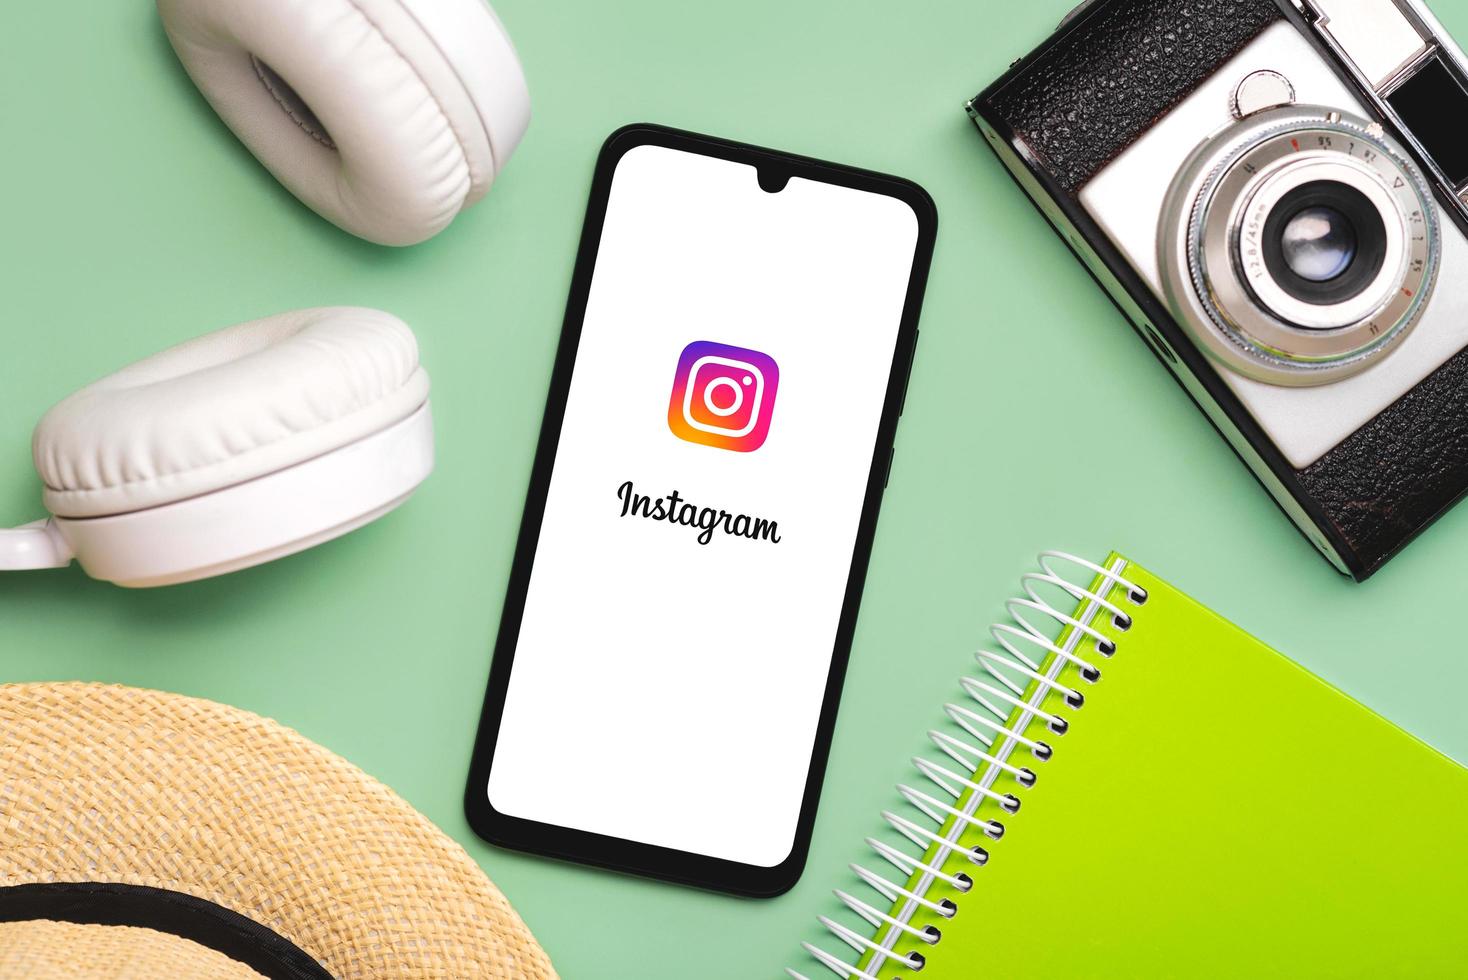 instagram-toepassingspictogram op wit scherm van smartphone met witte draadloze hoofdtelefoon, vintage fotocamera, hoed en notebook foto